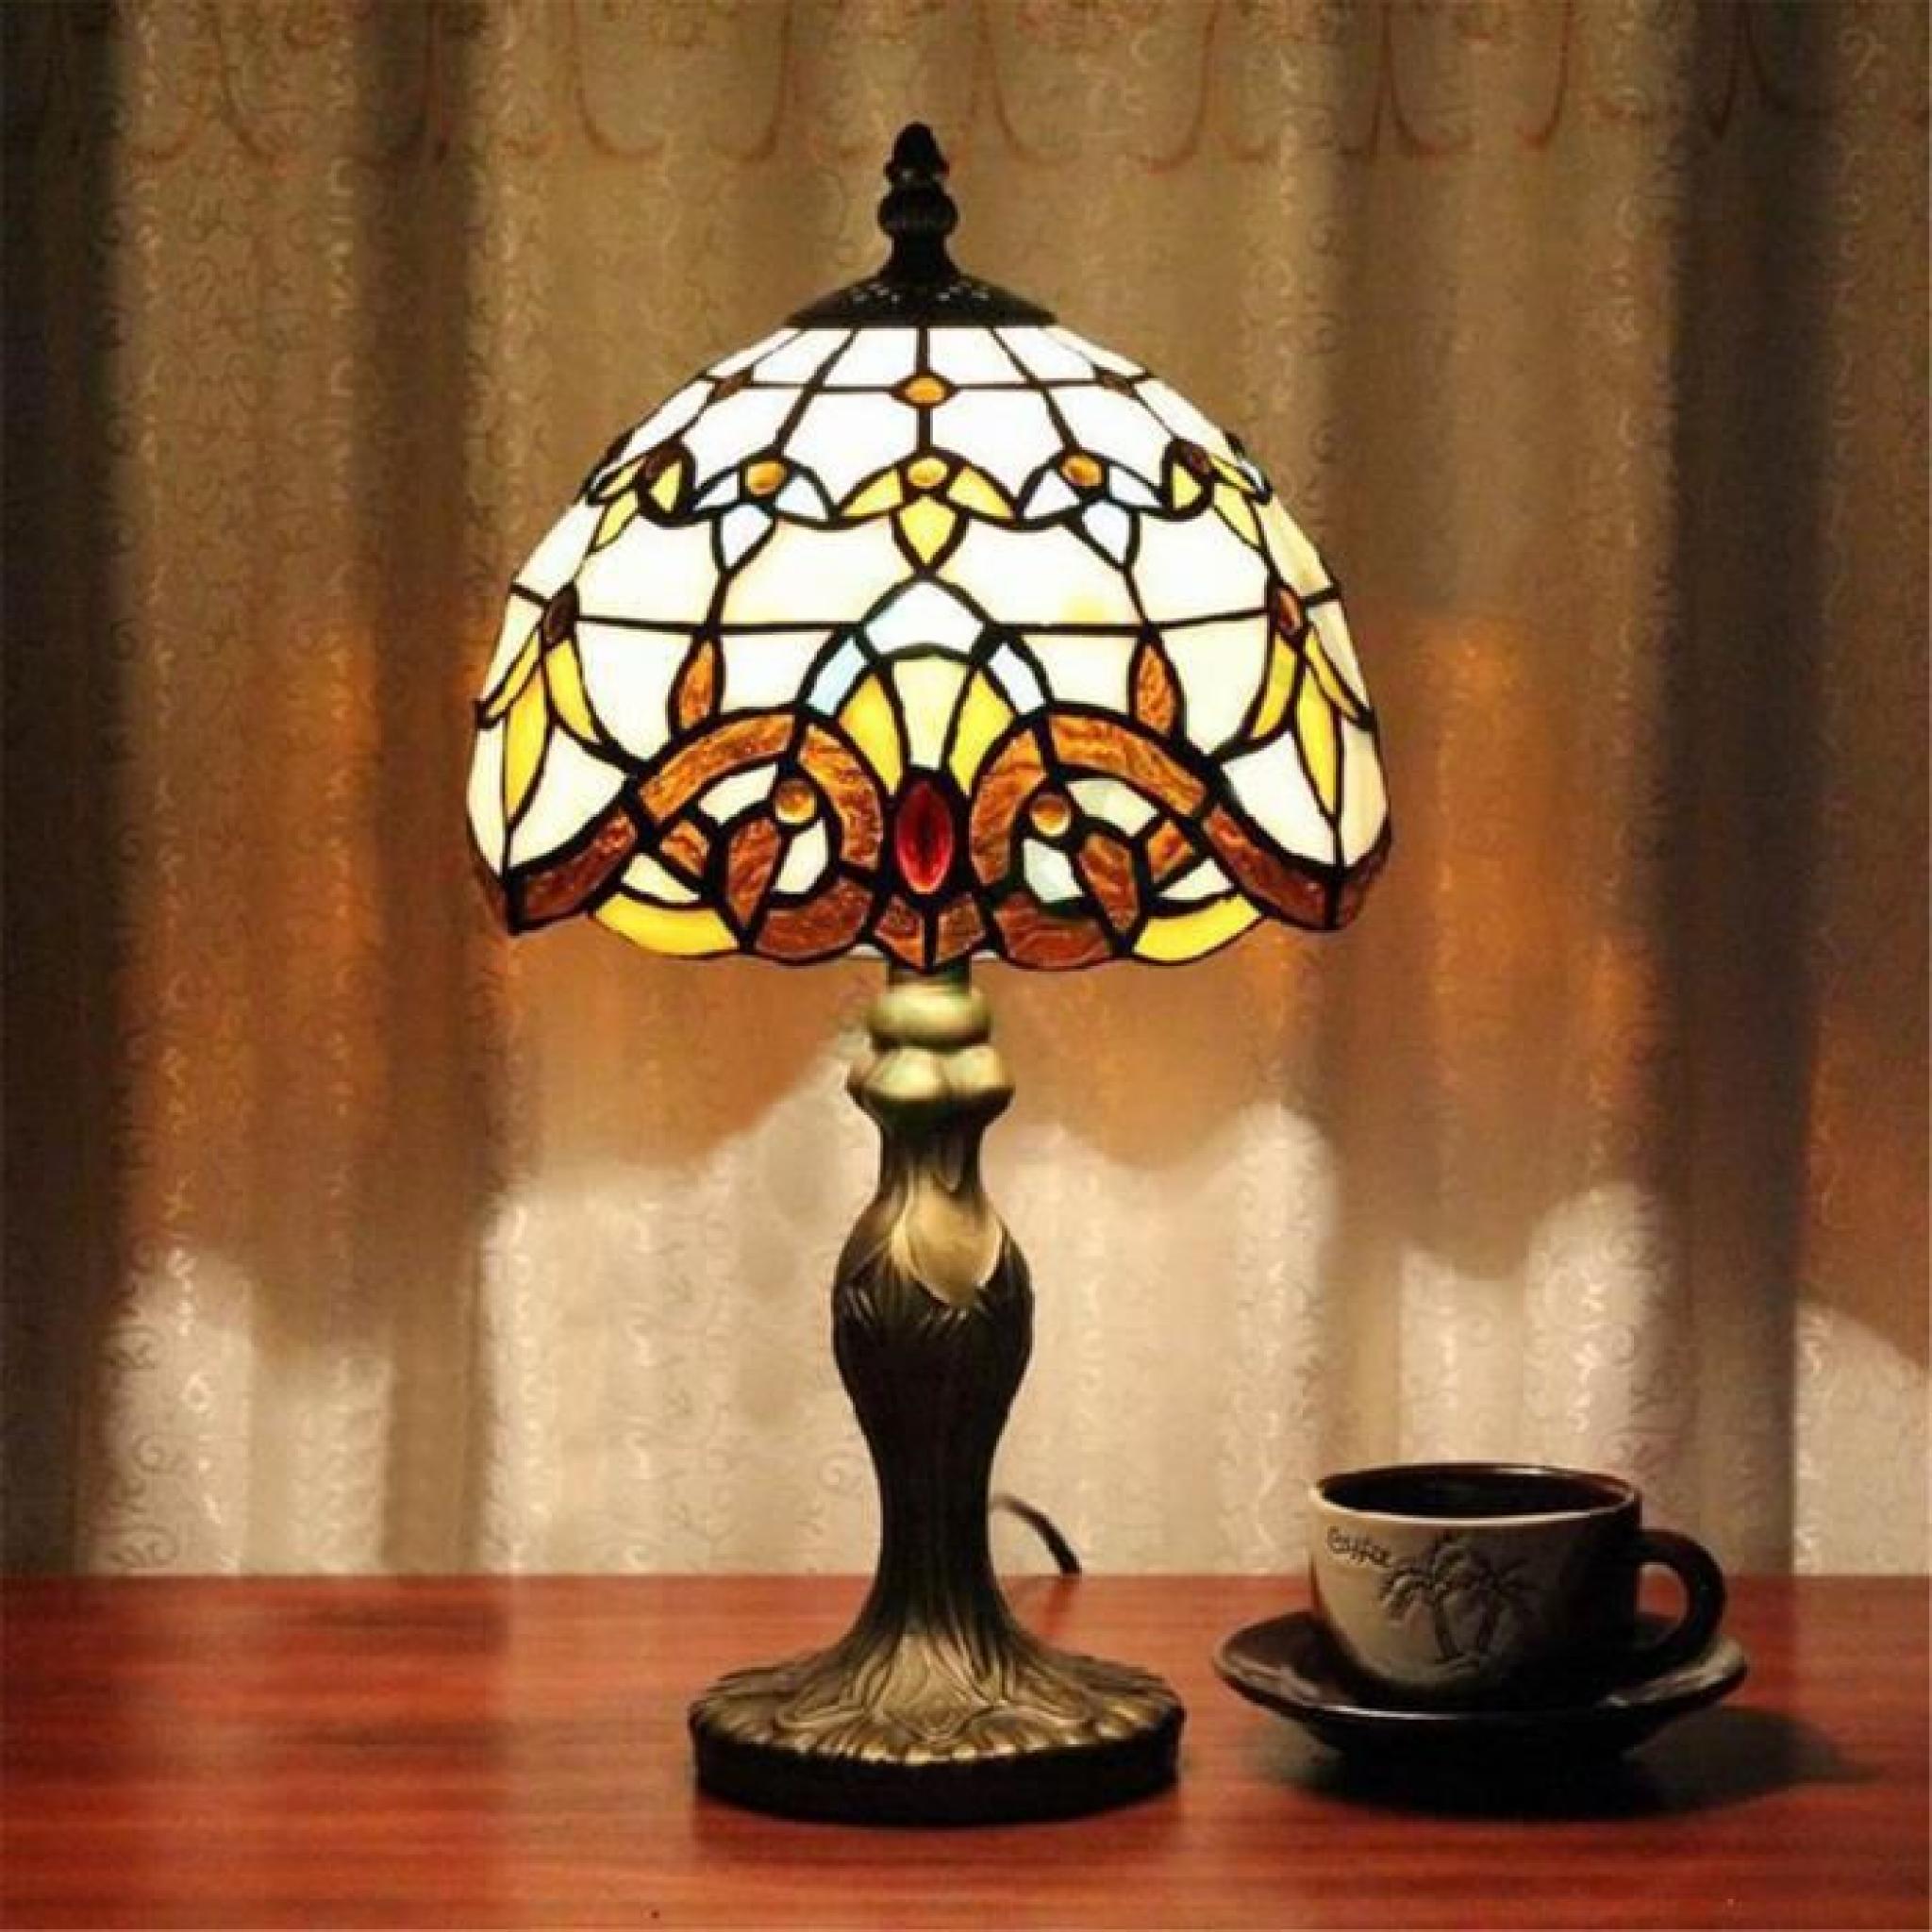 FerandHome Rétro Lampes Lampe De Table Chevet Eclairage Classique Art Antique Magnifique Belle Chambre Salon